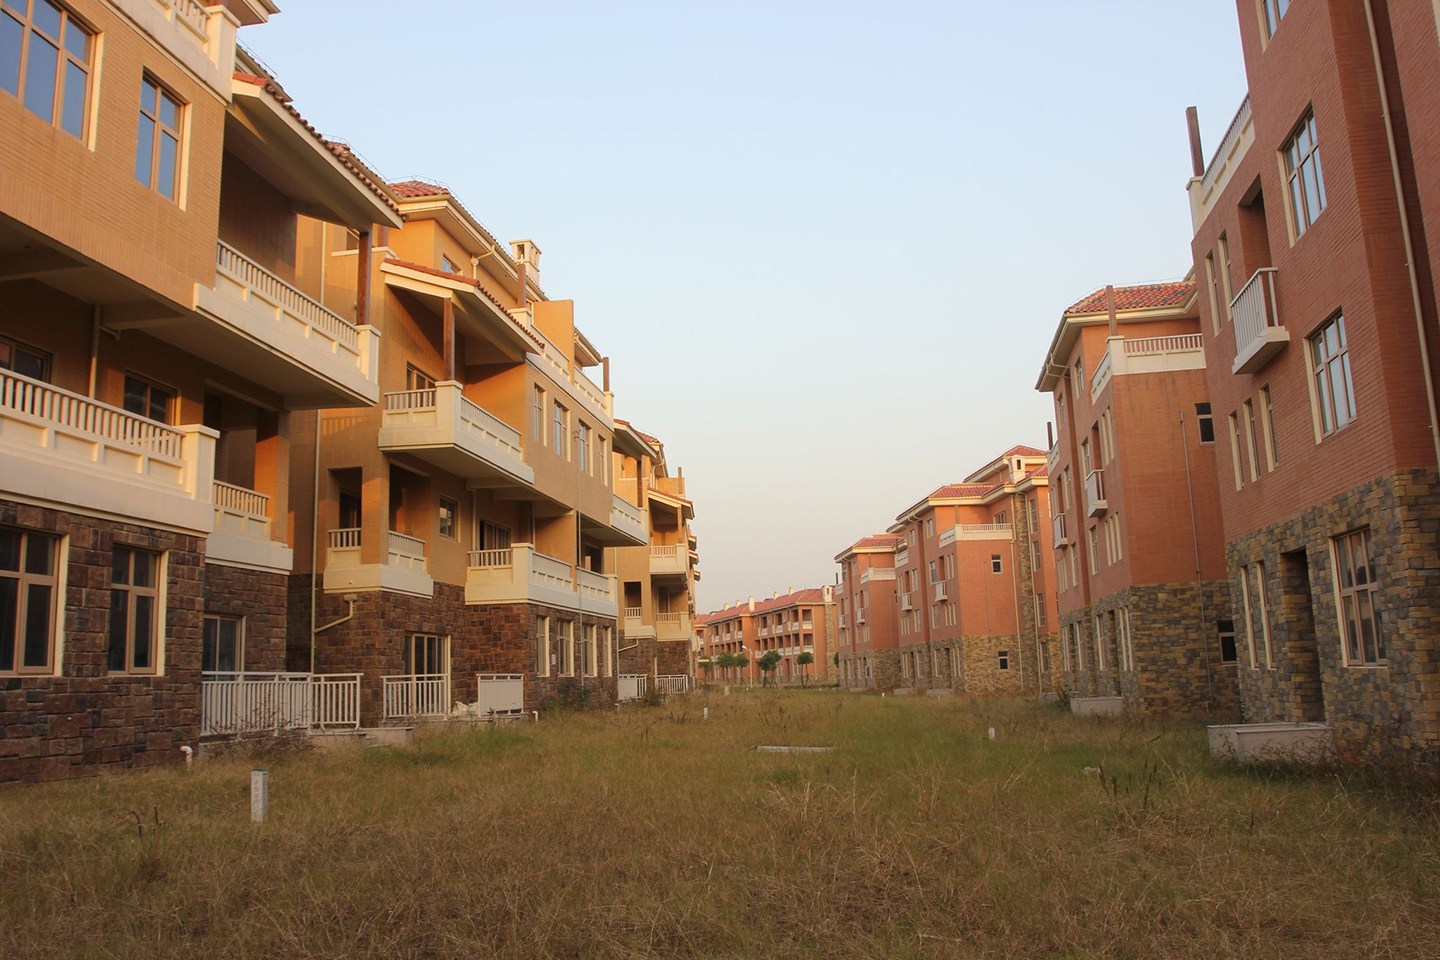 2013年11月17日，武汉蔡甸出现大面积空置别墅群，别墅群约有50栋两层的楼房，一年前已建好，一直没人居住。该空置别墅群所在区域为武汉市蔡甸区打造的“中国健康谷”，是政府的规划项目。据媒体2010年报道，整个“中国健康谷”项目总投资200亿元。